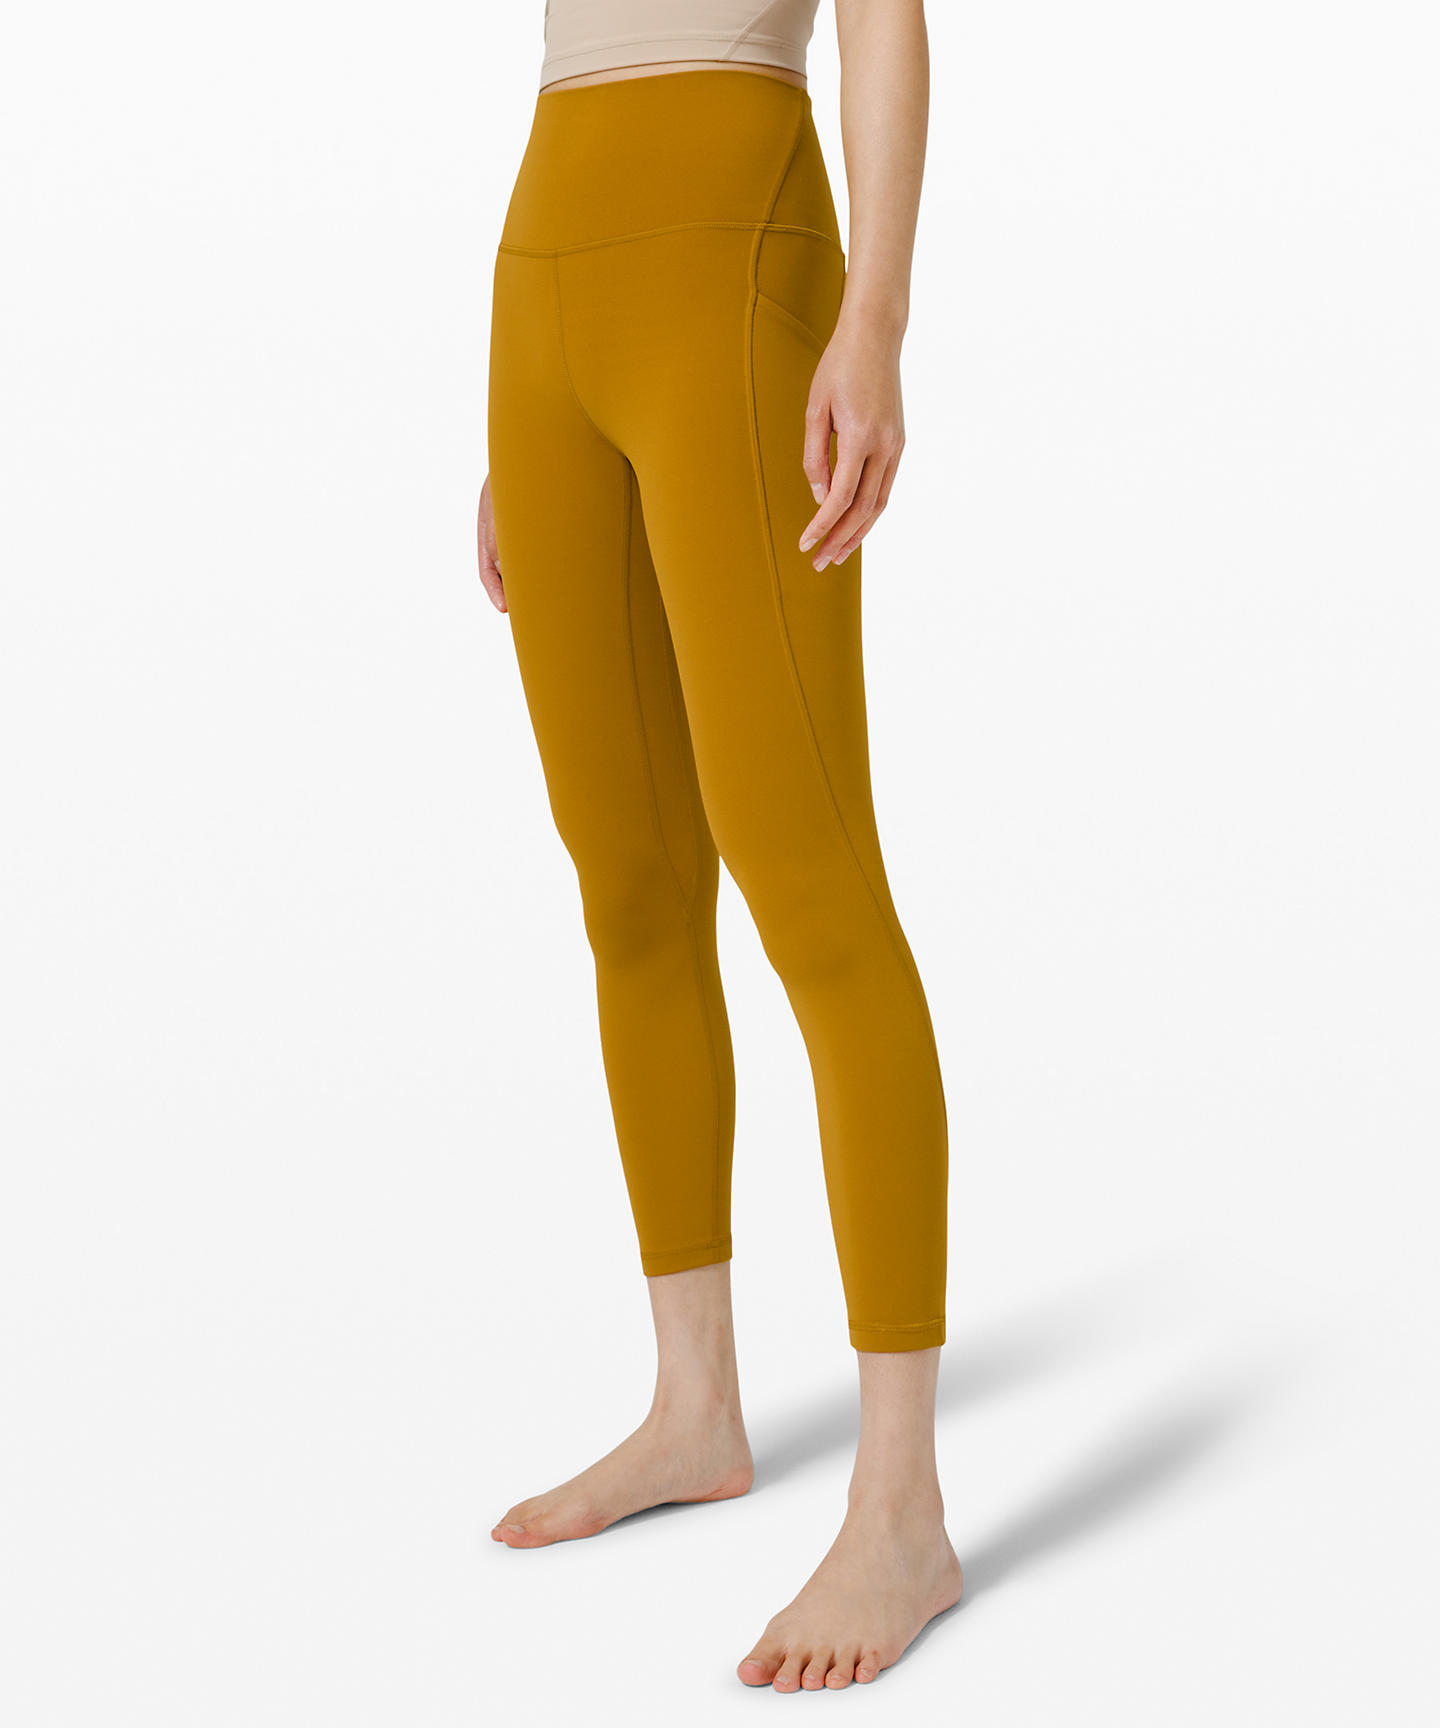 NWT Gold Lululemon Unlimit Highwaisted 25” leggings size 2 | eBay